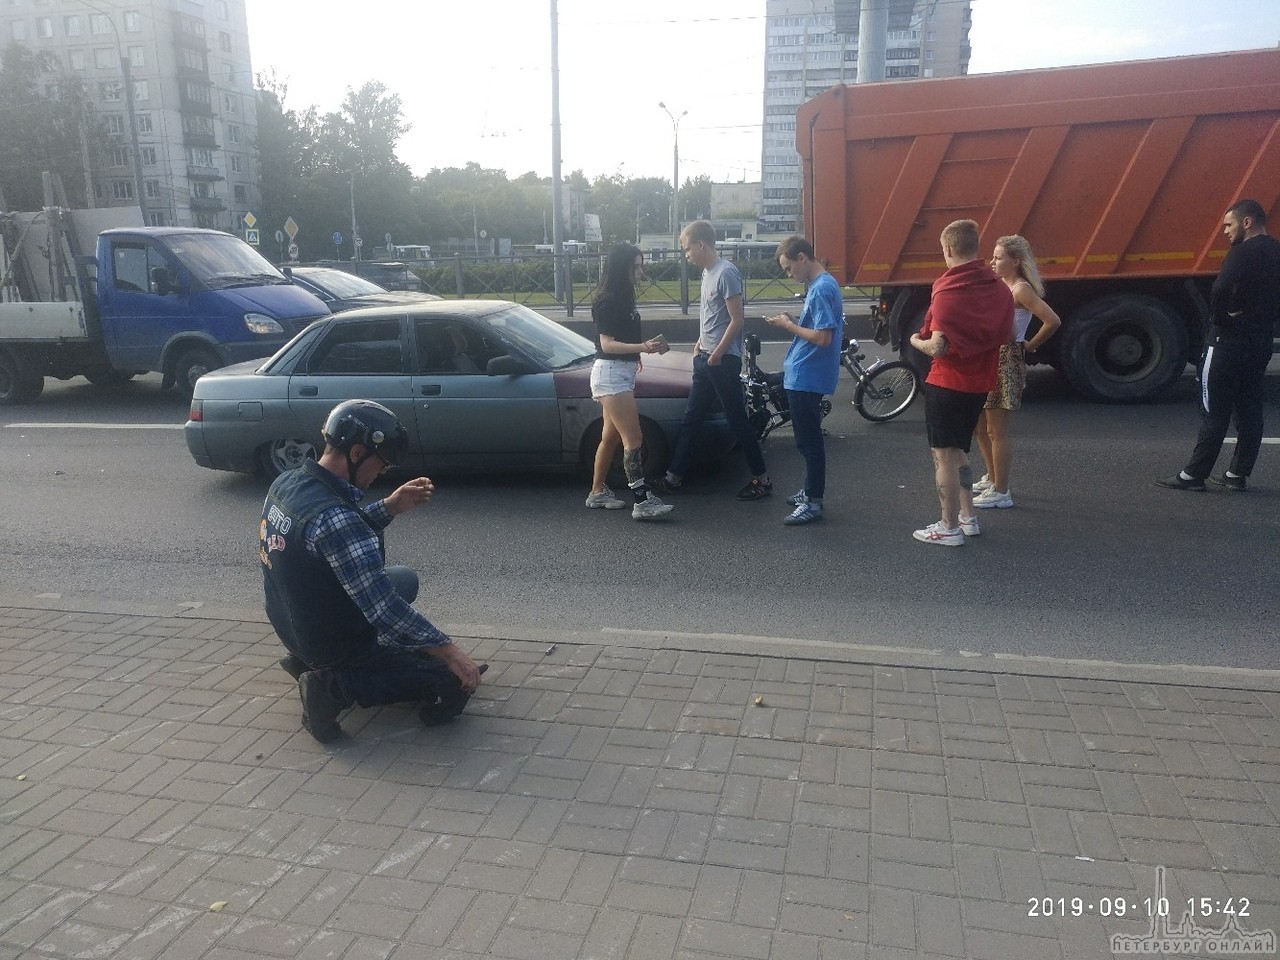 В 15:45 произошла авария на Пискаревском путкпроводе. Молодой водитель на ВАЗ сбил байкера. Скорую в...